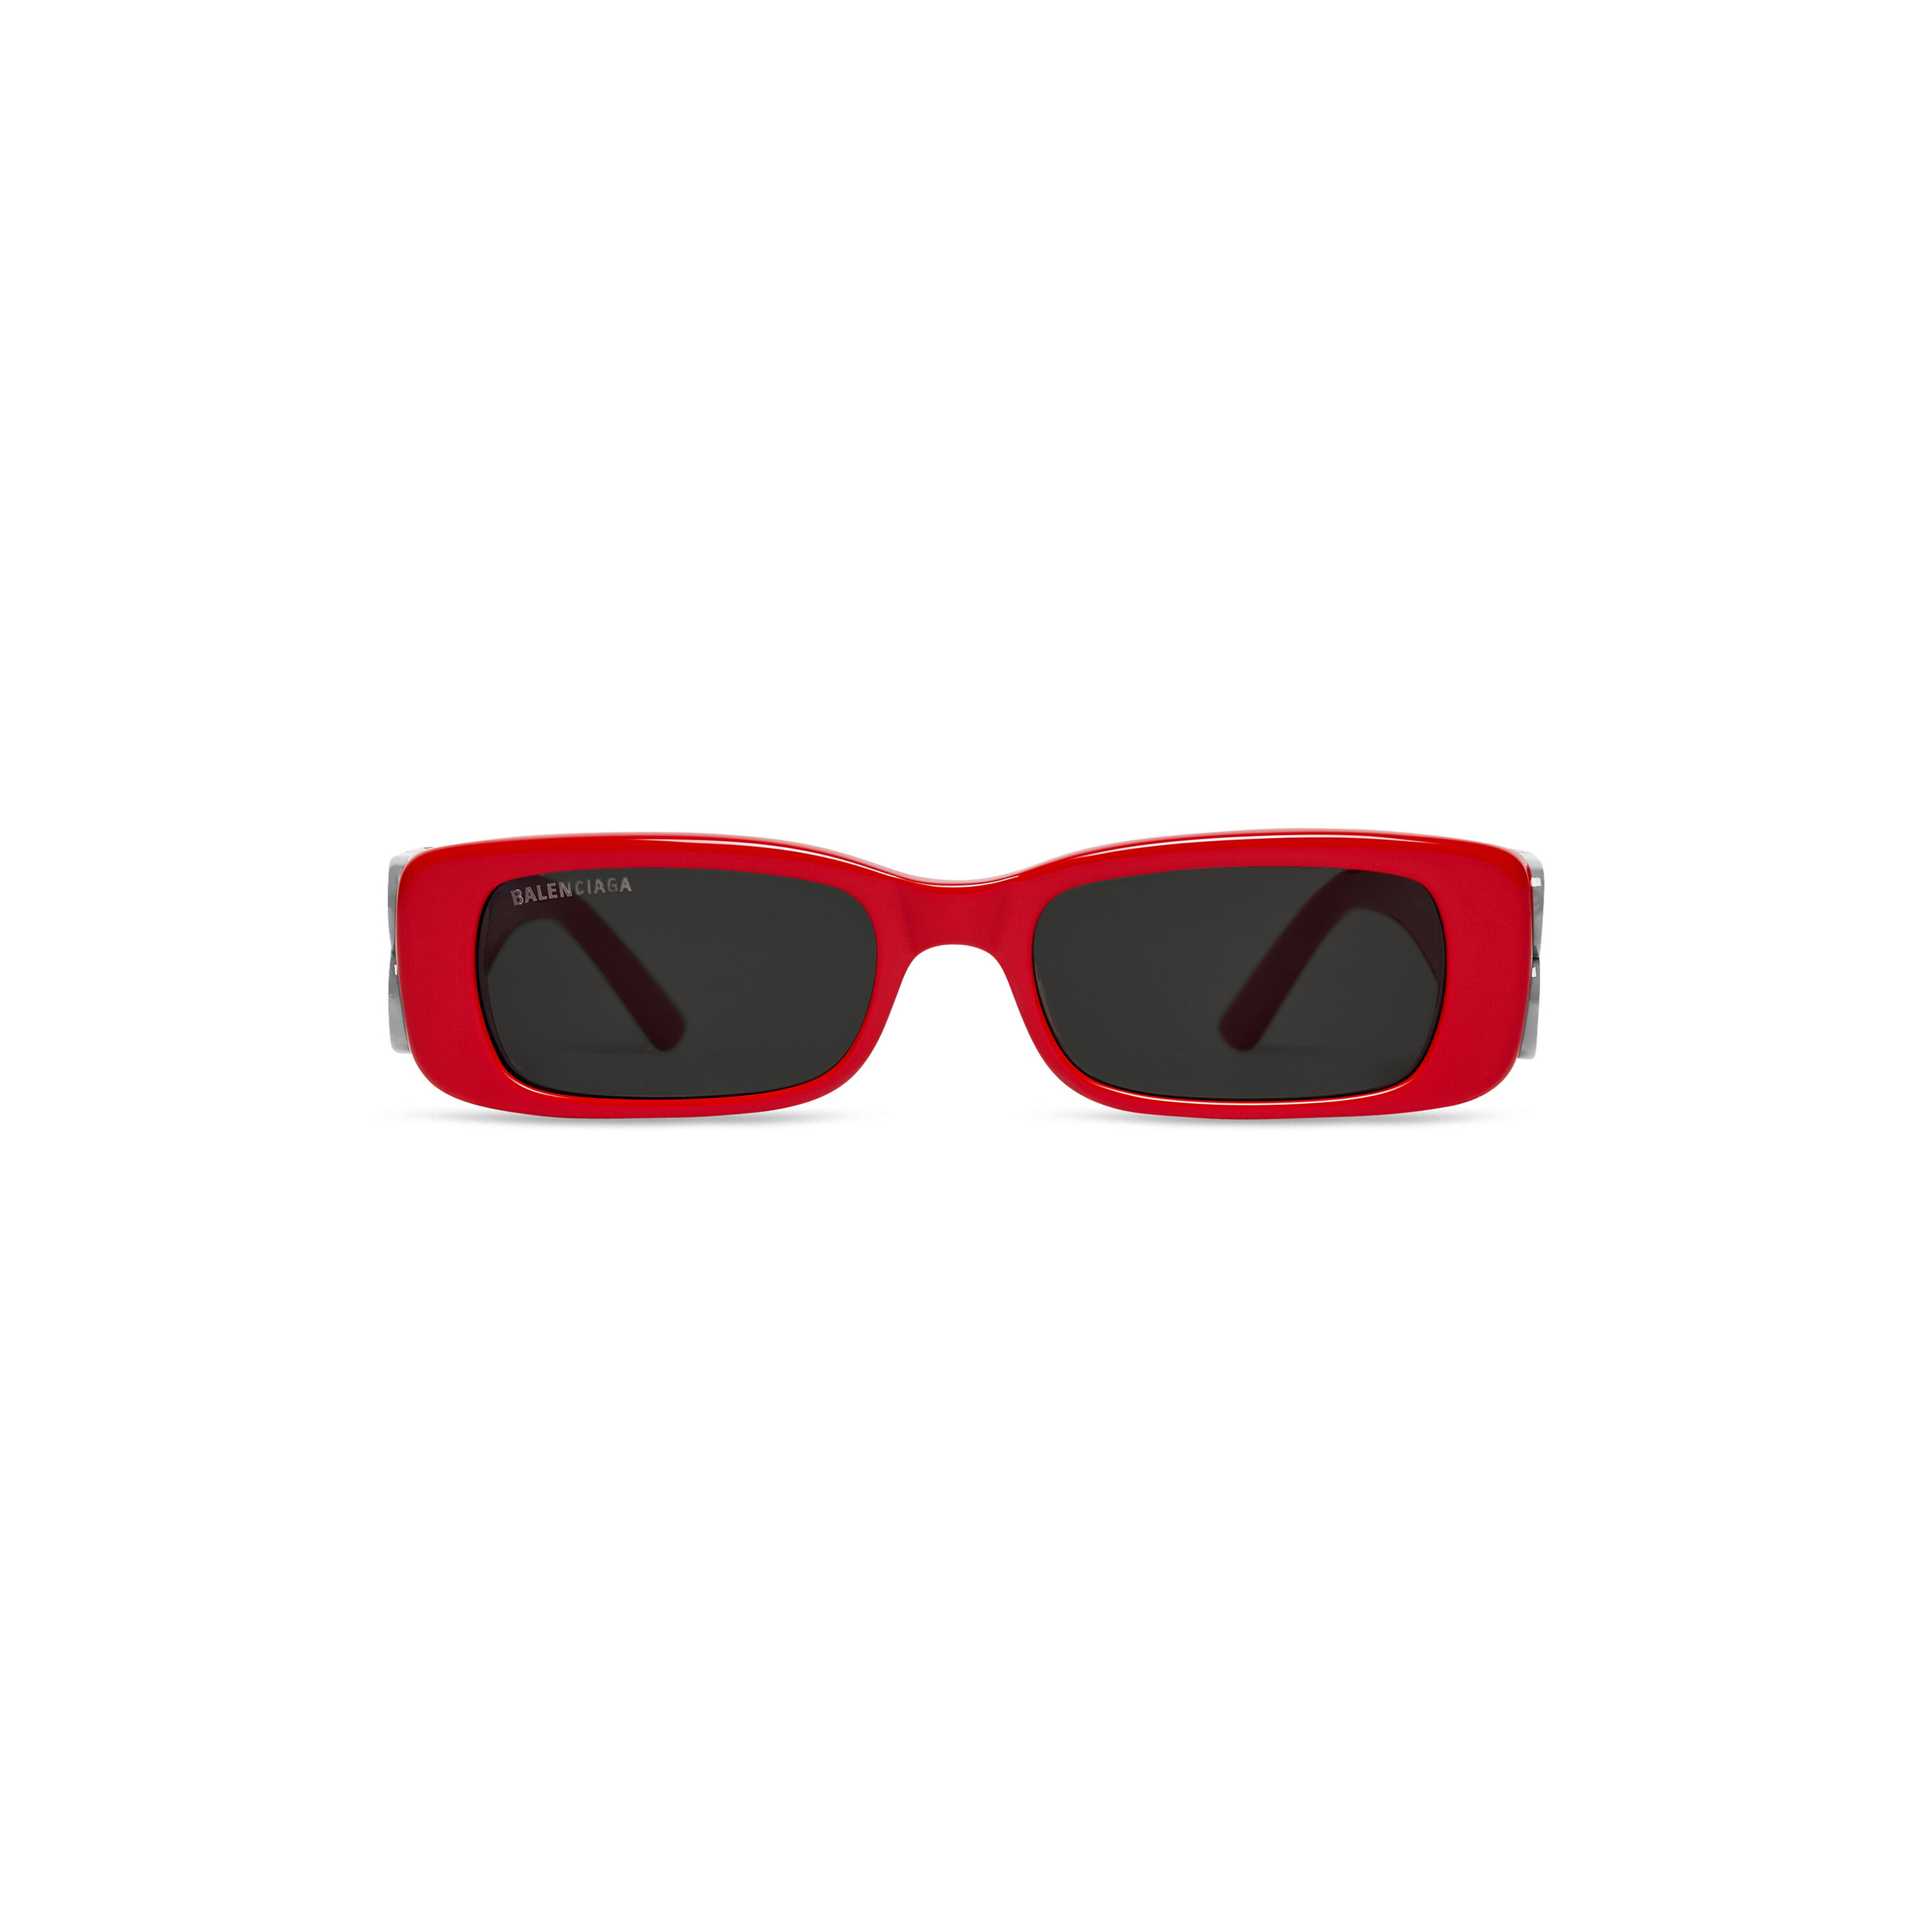 Balenciaga BB0236S 52 Grey  Red Sunglasses  Sunglass Hut USA